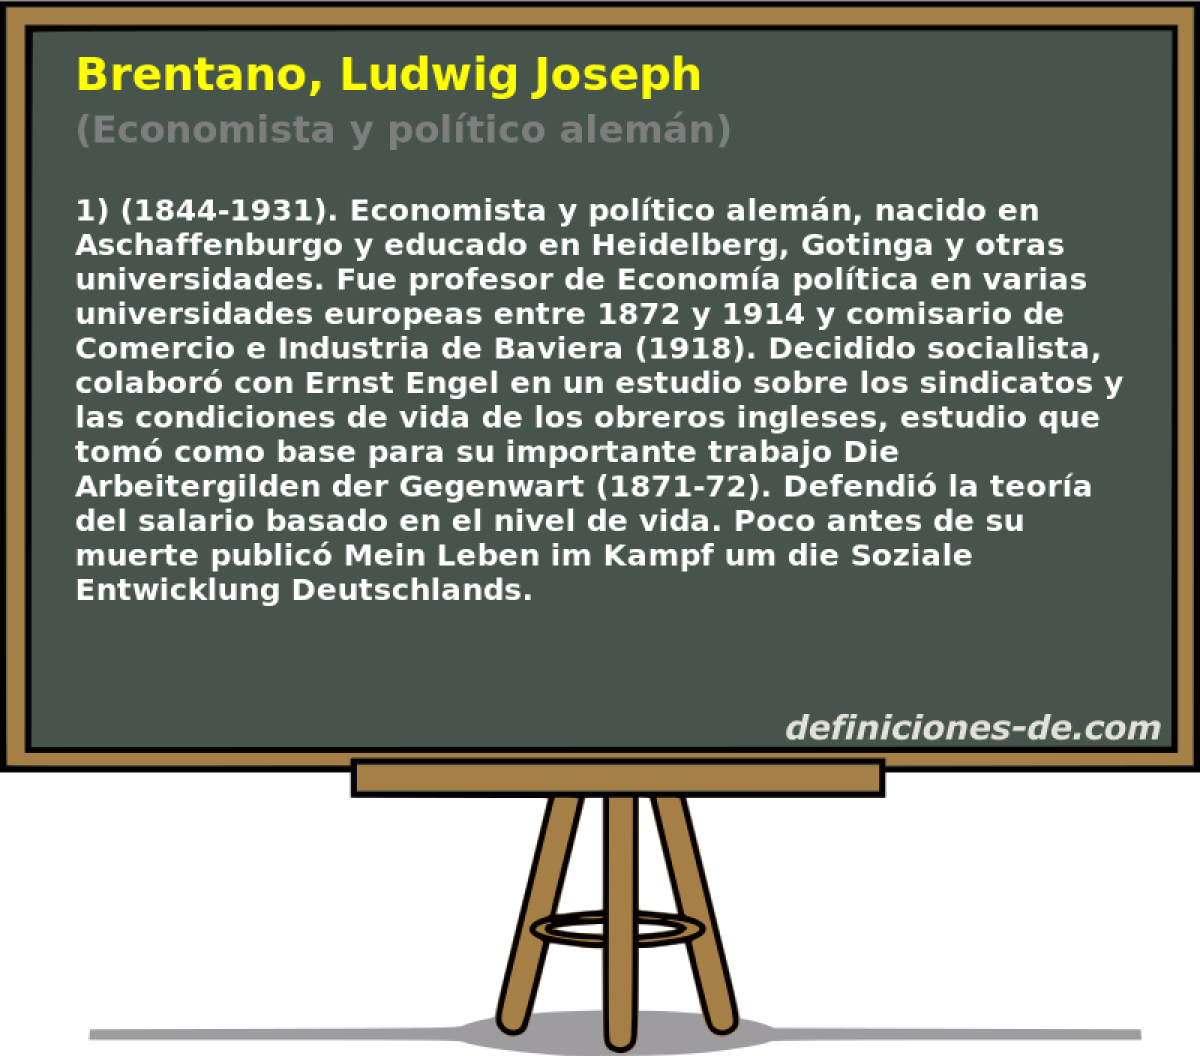 Brentano, Ludwig Joseph (Economista y poltico alemn)